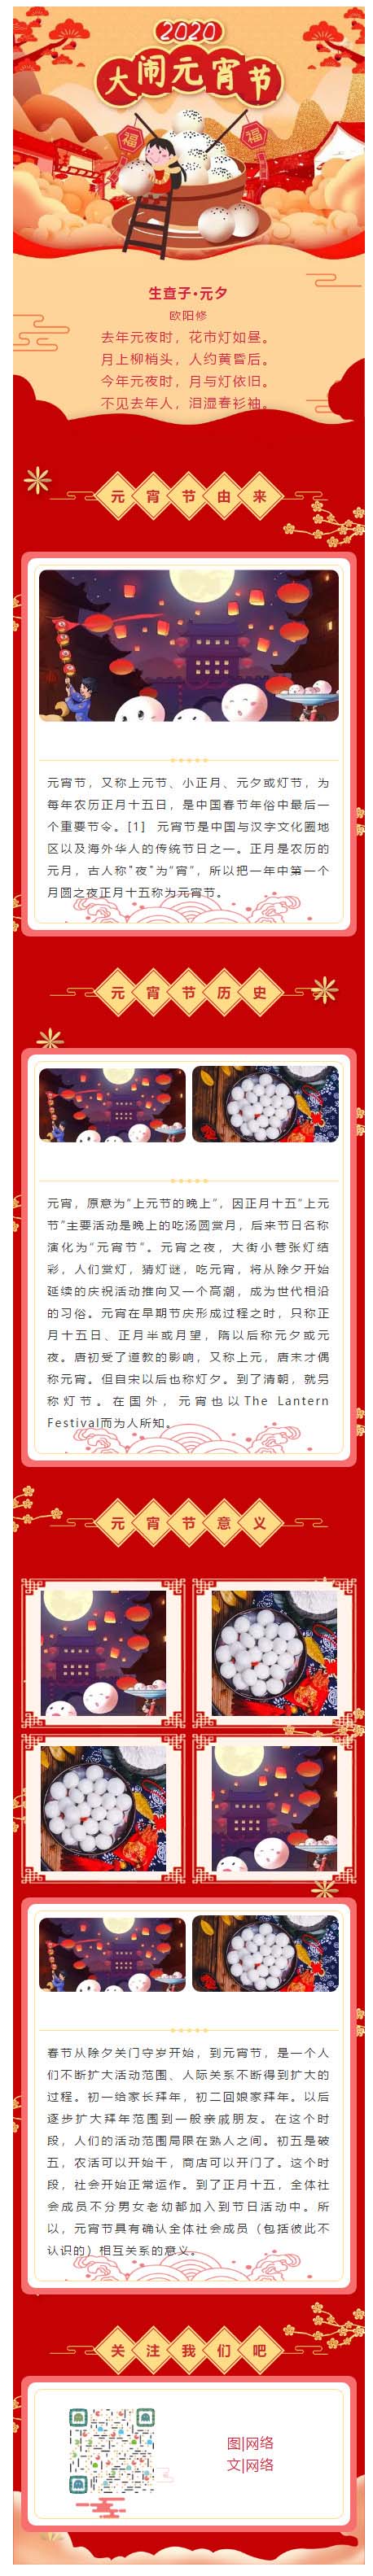 元宵节传统节日正月十五红色喜庆风格模板微信图文模板公众号推文素材